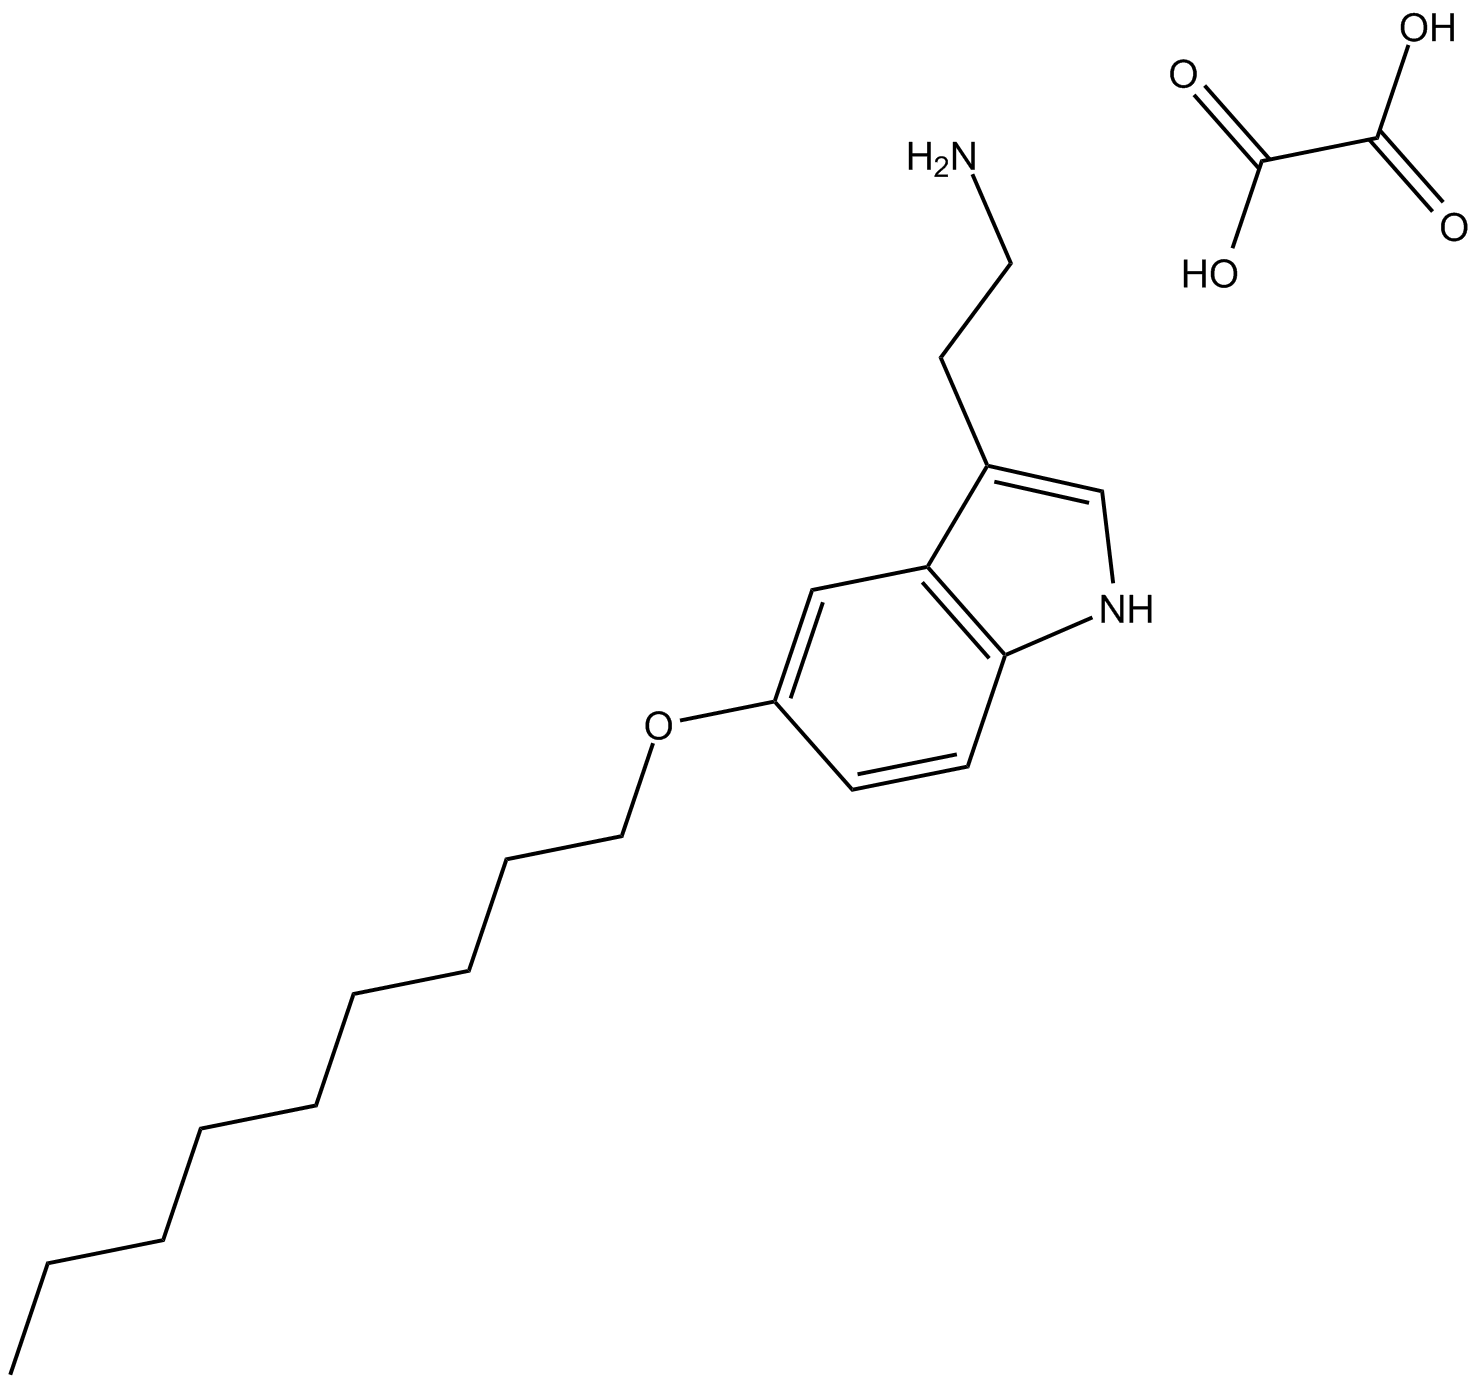 5-Nonyloxytryptamine oxalate